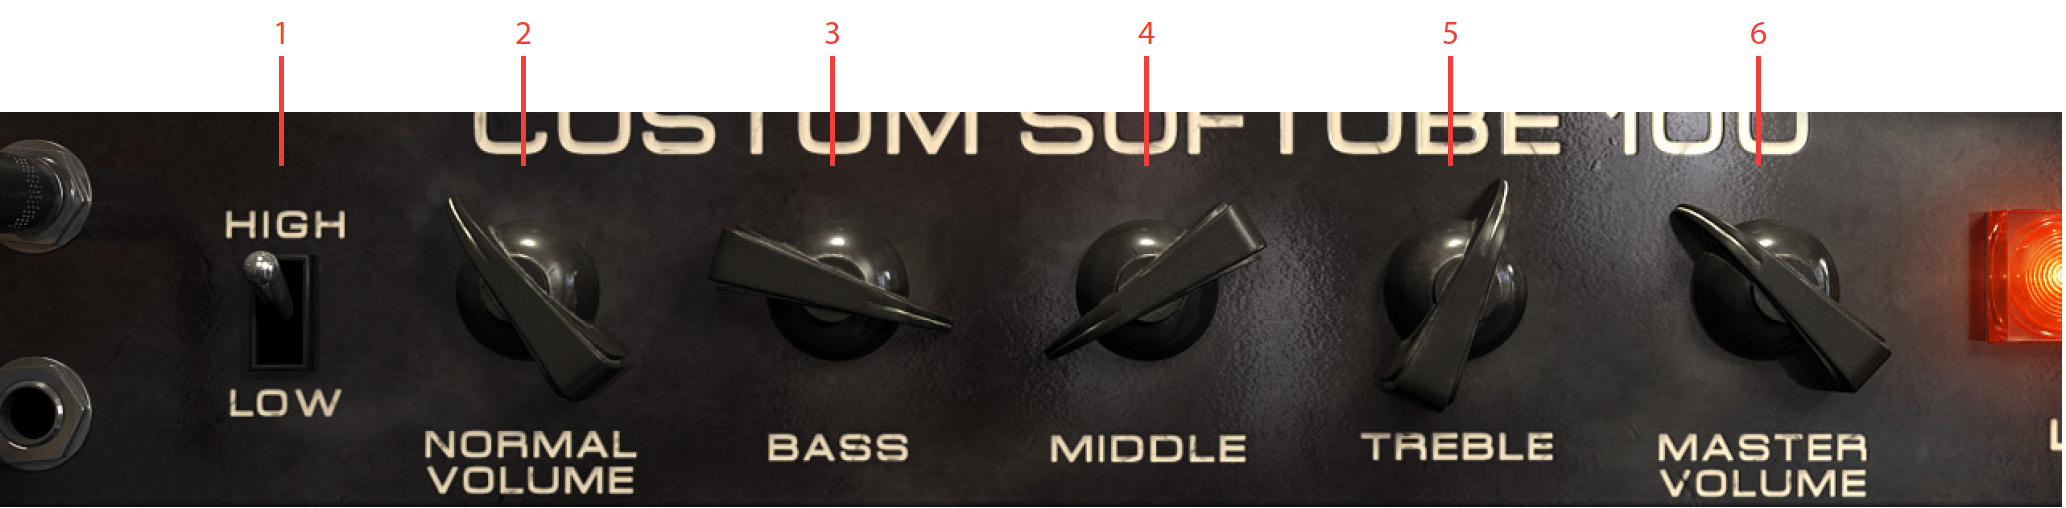 bass-amp-room-4-the-amplifier-interface.jpg